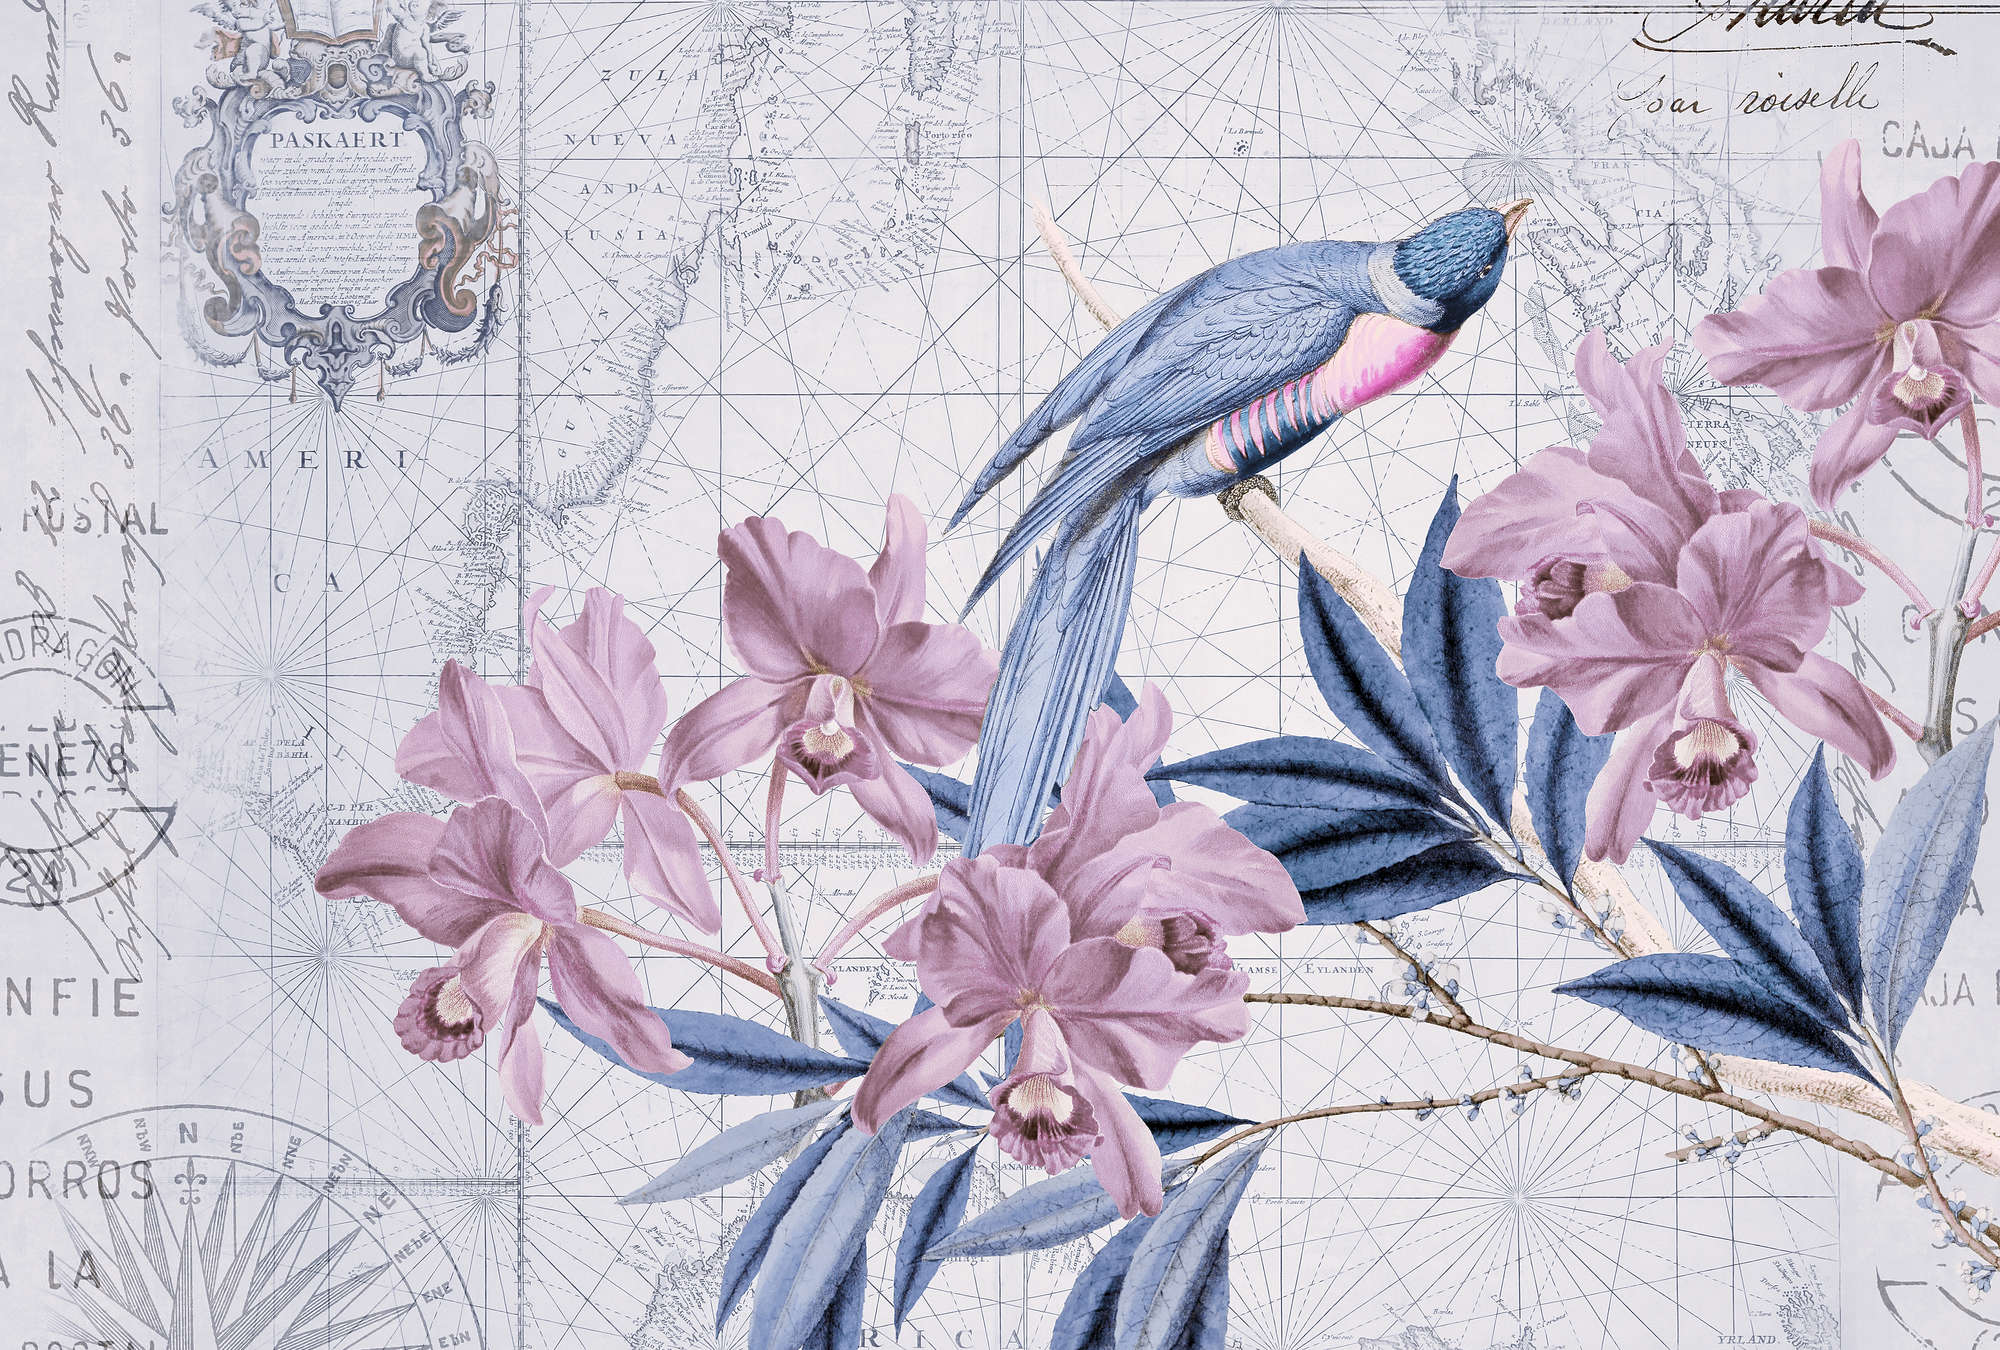             Papel pintado de decoración vintage con motivos de mapas y naturaleza
        